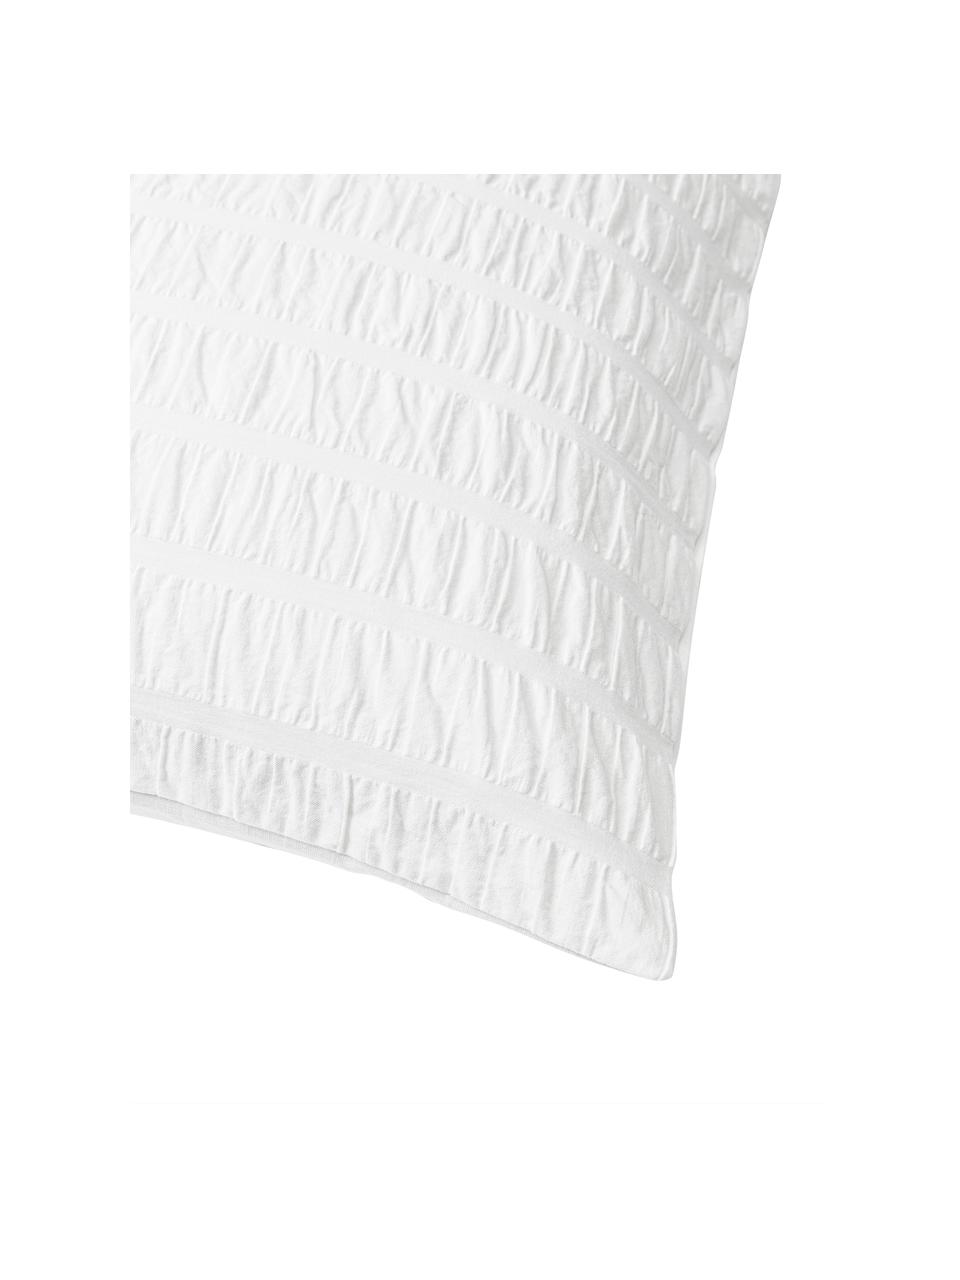 Copricuscino in cotone bianco Esme 2 pz, Retro: Ranforce Densità dei fili, Bianco, Larg. 50 x Lung. 80 cm 2 pz